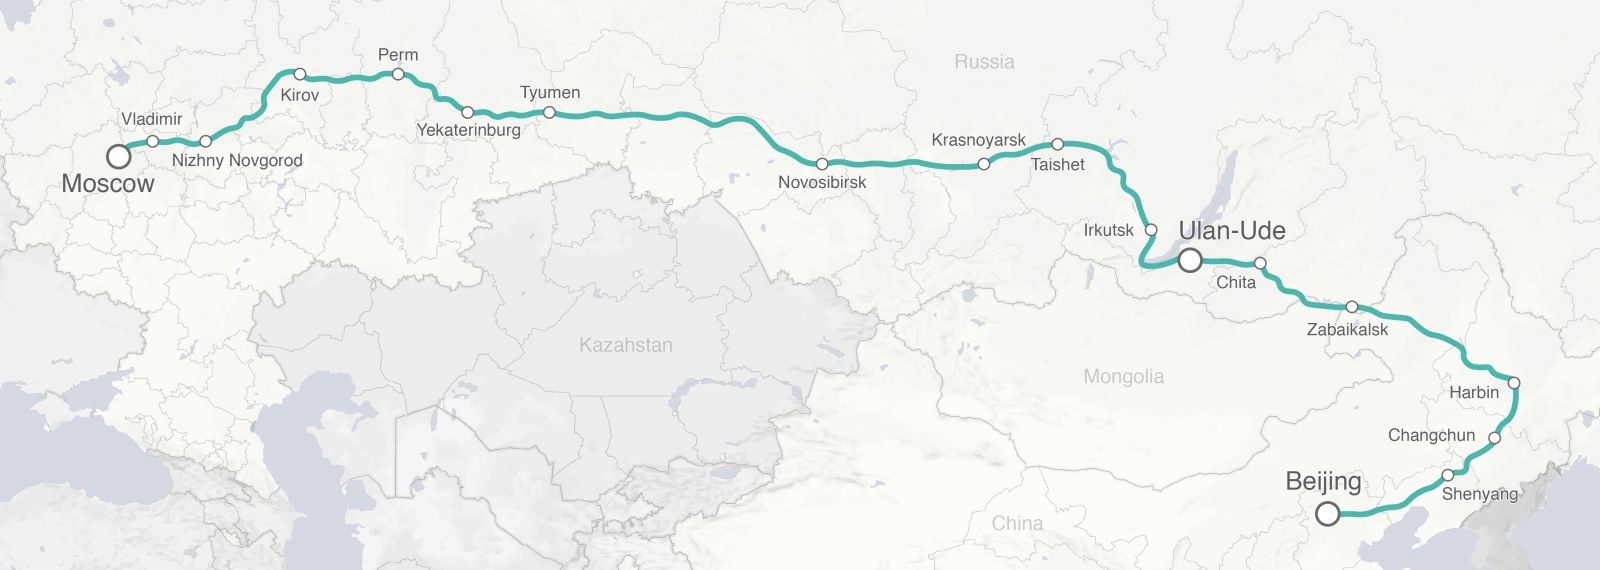 Moscow-Vladivostok route